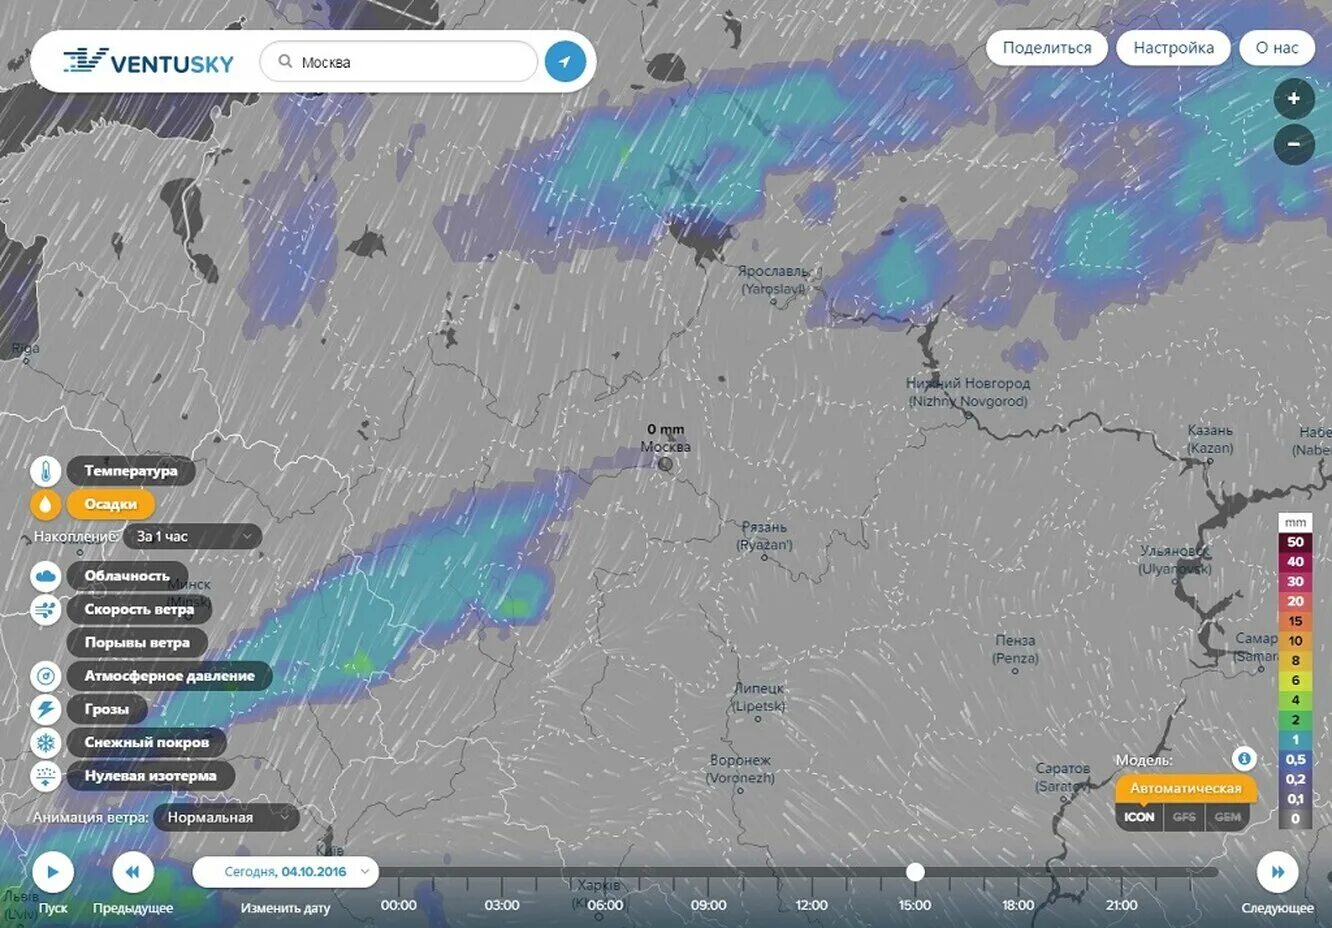 Найти погода в россии. Карта погоды. Облачность на карте в реальном времени. Карта погодных условий в реальном времени. Карта туч в реальном времени.